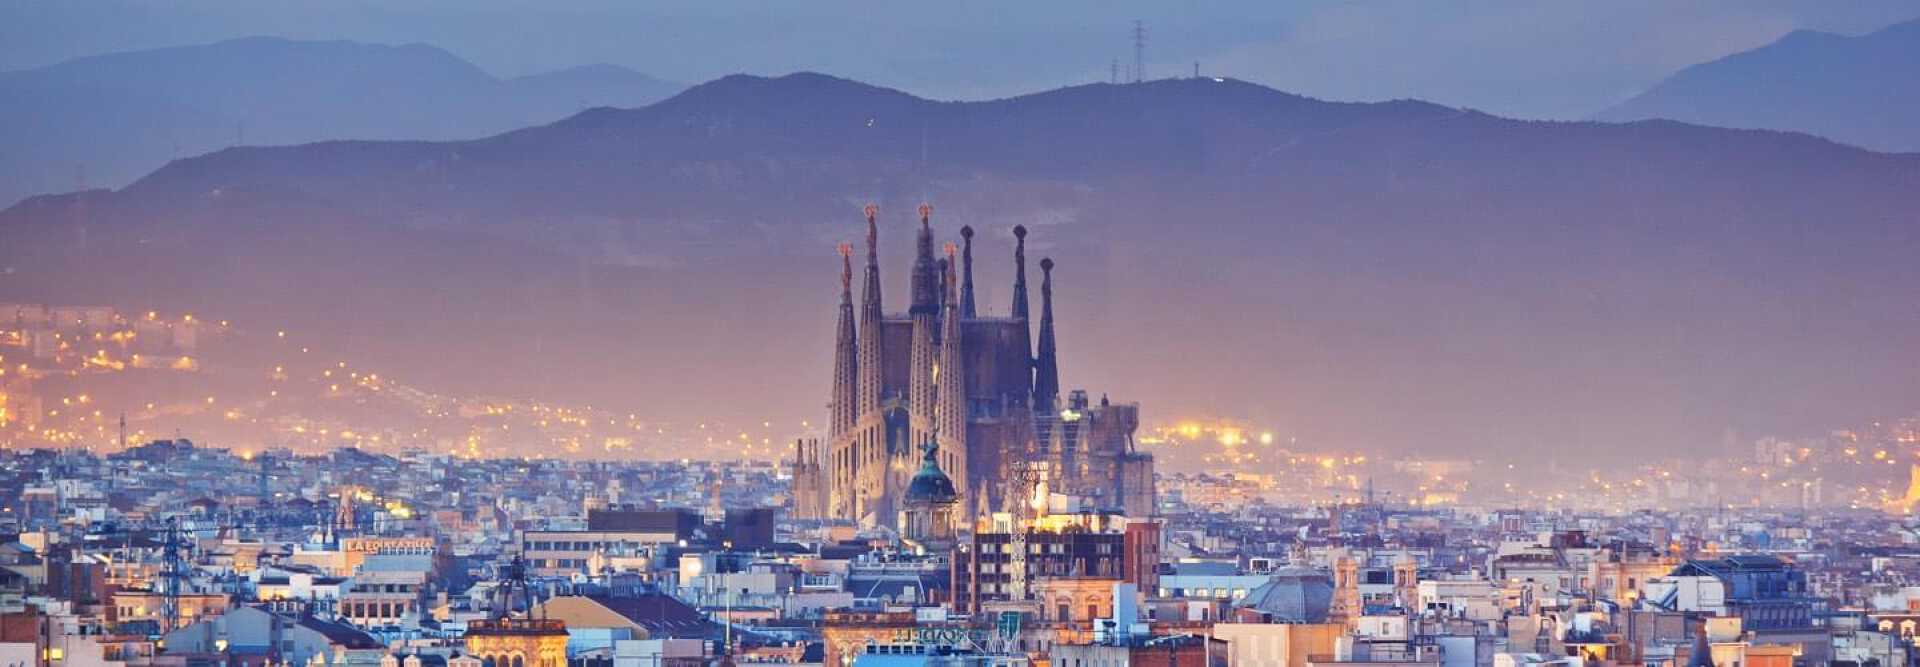 Basilika und Sühnekirche Sagrada Familia von Antoni Gaudi in Barcelona und Stadtzentrum bei Nacht